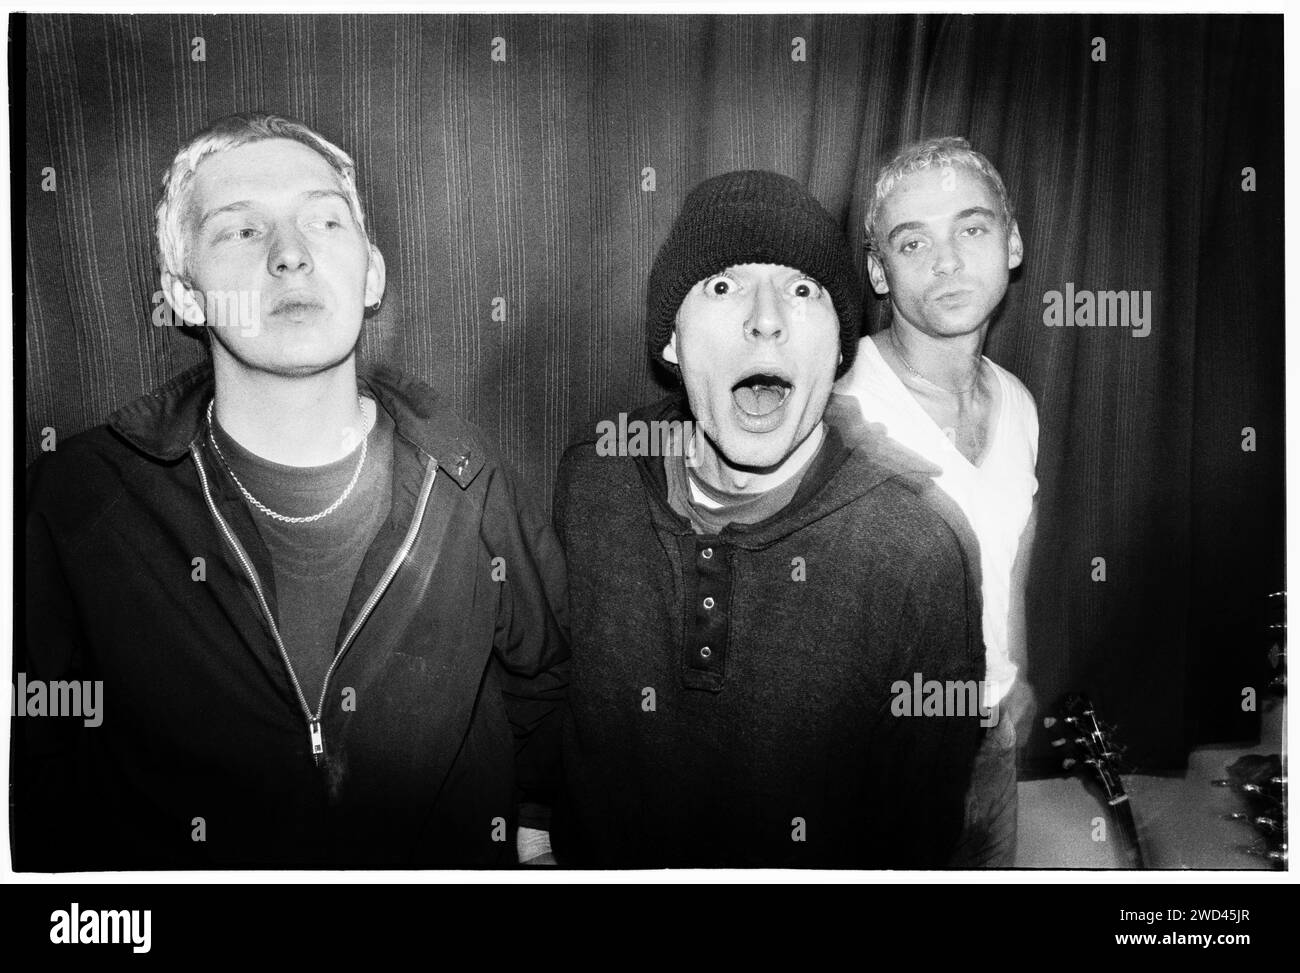 La band punk S*M*A*S*H (SMASH) fotografò il backstage a Newport TJs, Regno Unito, il 13 ottobre 1994. Foto: Rob Watkins. INFO: SMASH, una band punk britannica degli anni '90, ha abbracciato l'etica del fai da te. Il loro suono energetico, alimentato da testi politicamente carichi, trovò un seguito. Inni come "i Want to Kill Somebody" e "Shame" hanno catturato lo spirito ribelle della scena punk durante i loro anni di attività. Foto Stock